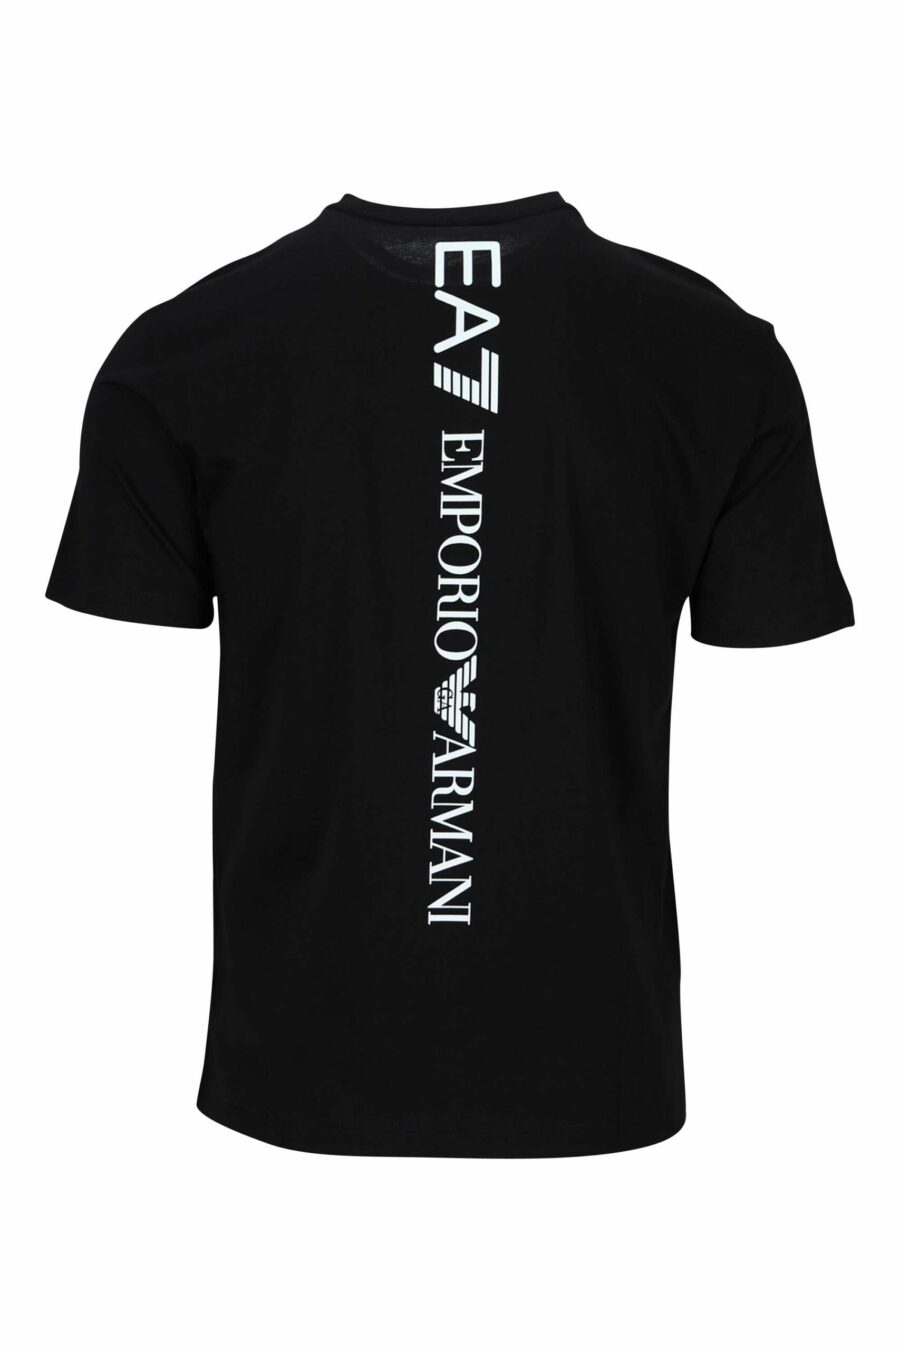 Schwarzes T-Shirt mit vertikalem "lux identity" Maxilogo auf dem Rücken - 8058947452668 1 skaliert